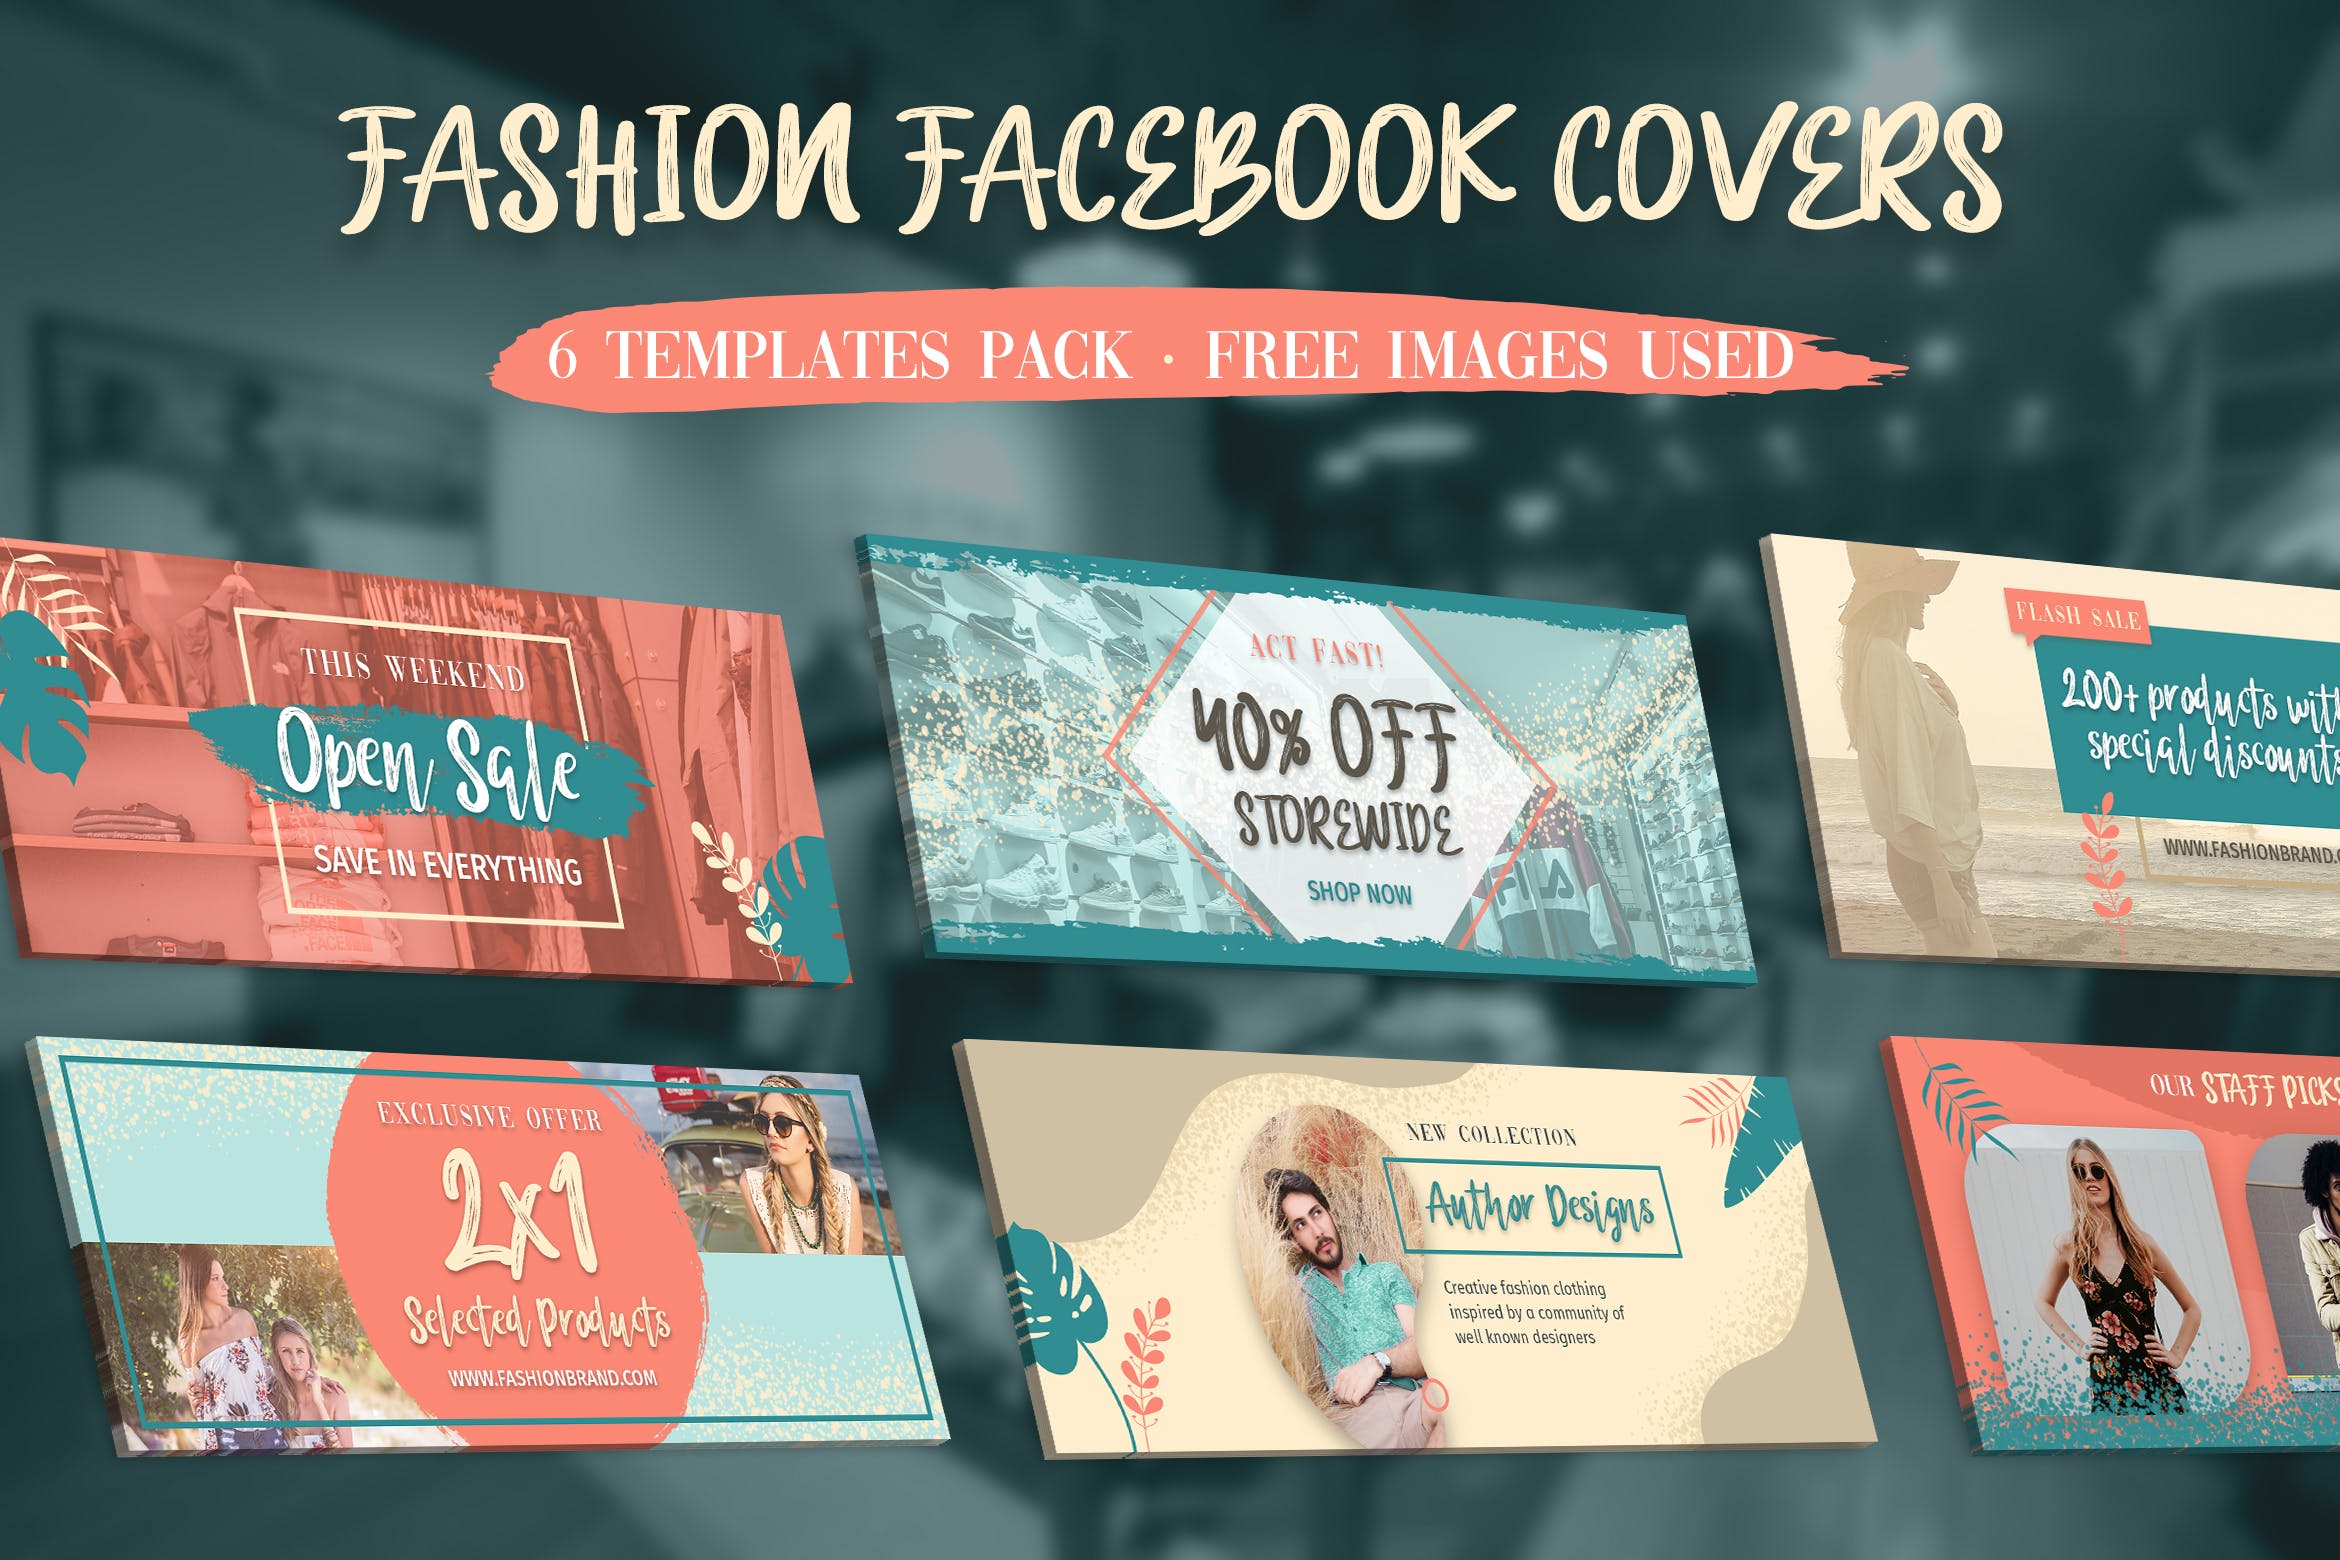 时尚品牌推广Facebook主页封面设计模板16设计网精选 Facebook Covers插图